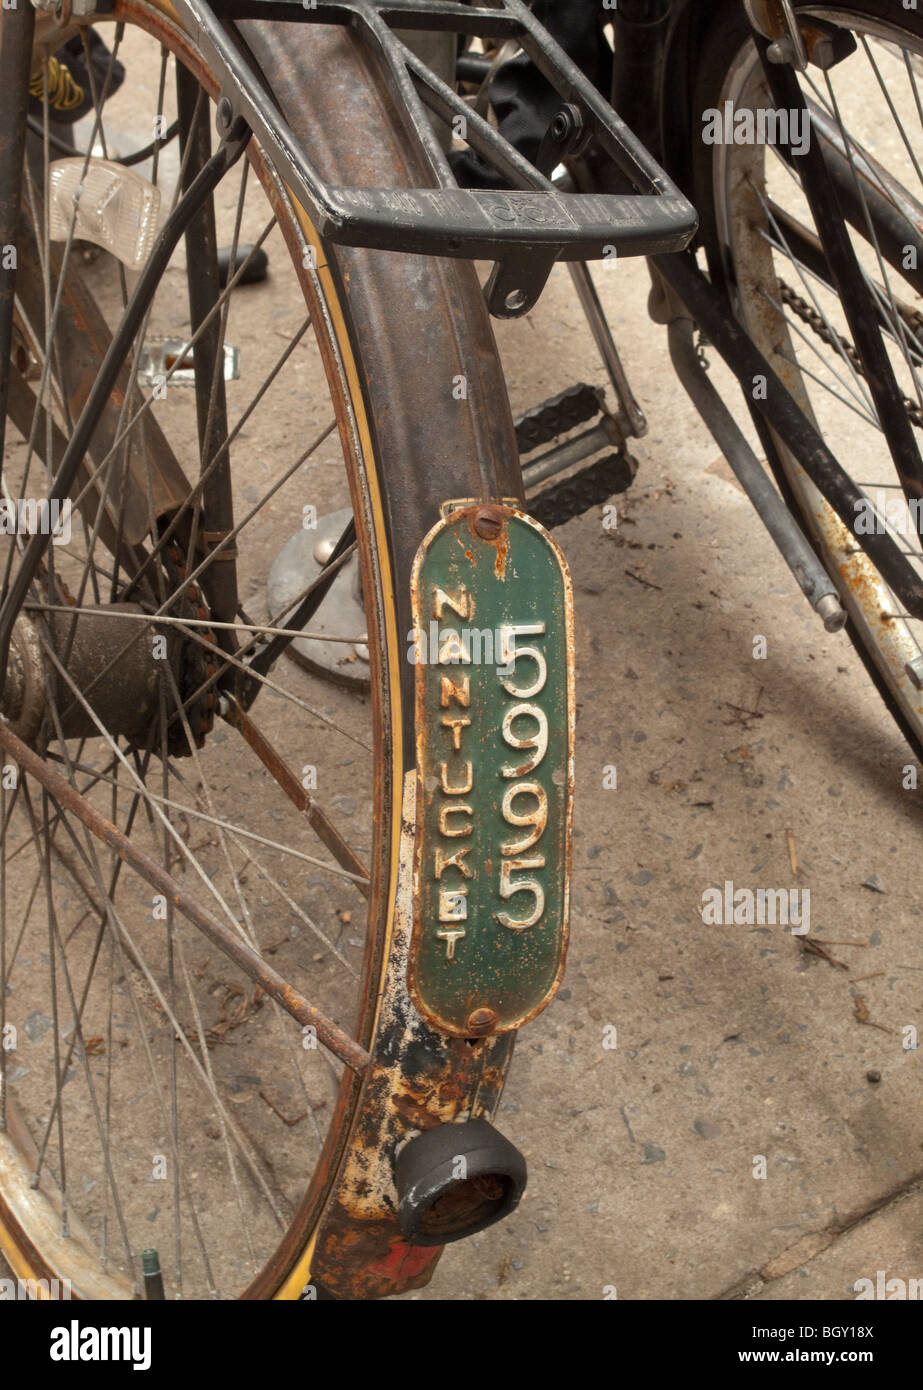 Alte Fahrrad mit drei Gängen mit Nantucket Fahrrad Kennzeichen  Stockfotografie - Alamy